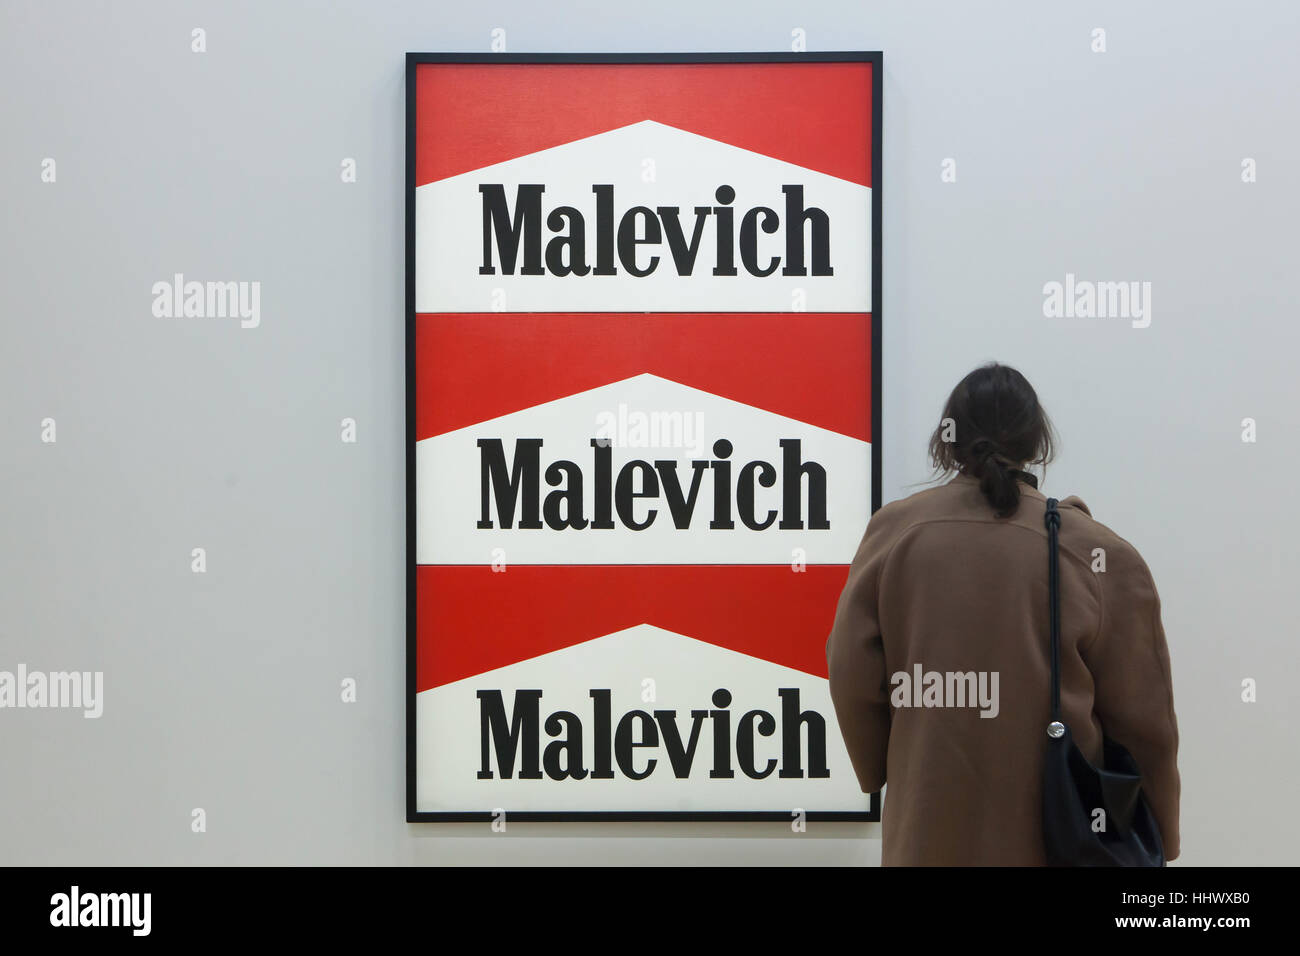 Visitante delante de el jadeo titulado Malevich-Marlboro (1985) por el artista conceptual ruso Alexander Kosolapov mostrado en la exposición dedicada al arte contemporáneo rusa y soviética de 1950 a 2000 en el Centro Pompidou en París, Francia. La exposición titulada Kollektsia! (Colección!) se extiende hasta el 27 de marzo de 2017. Foto de stock